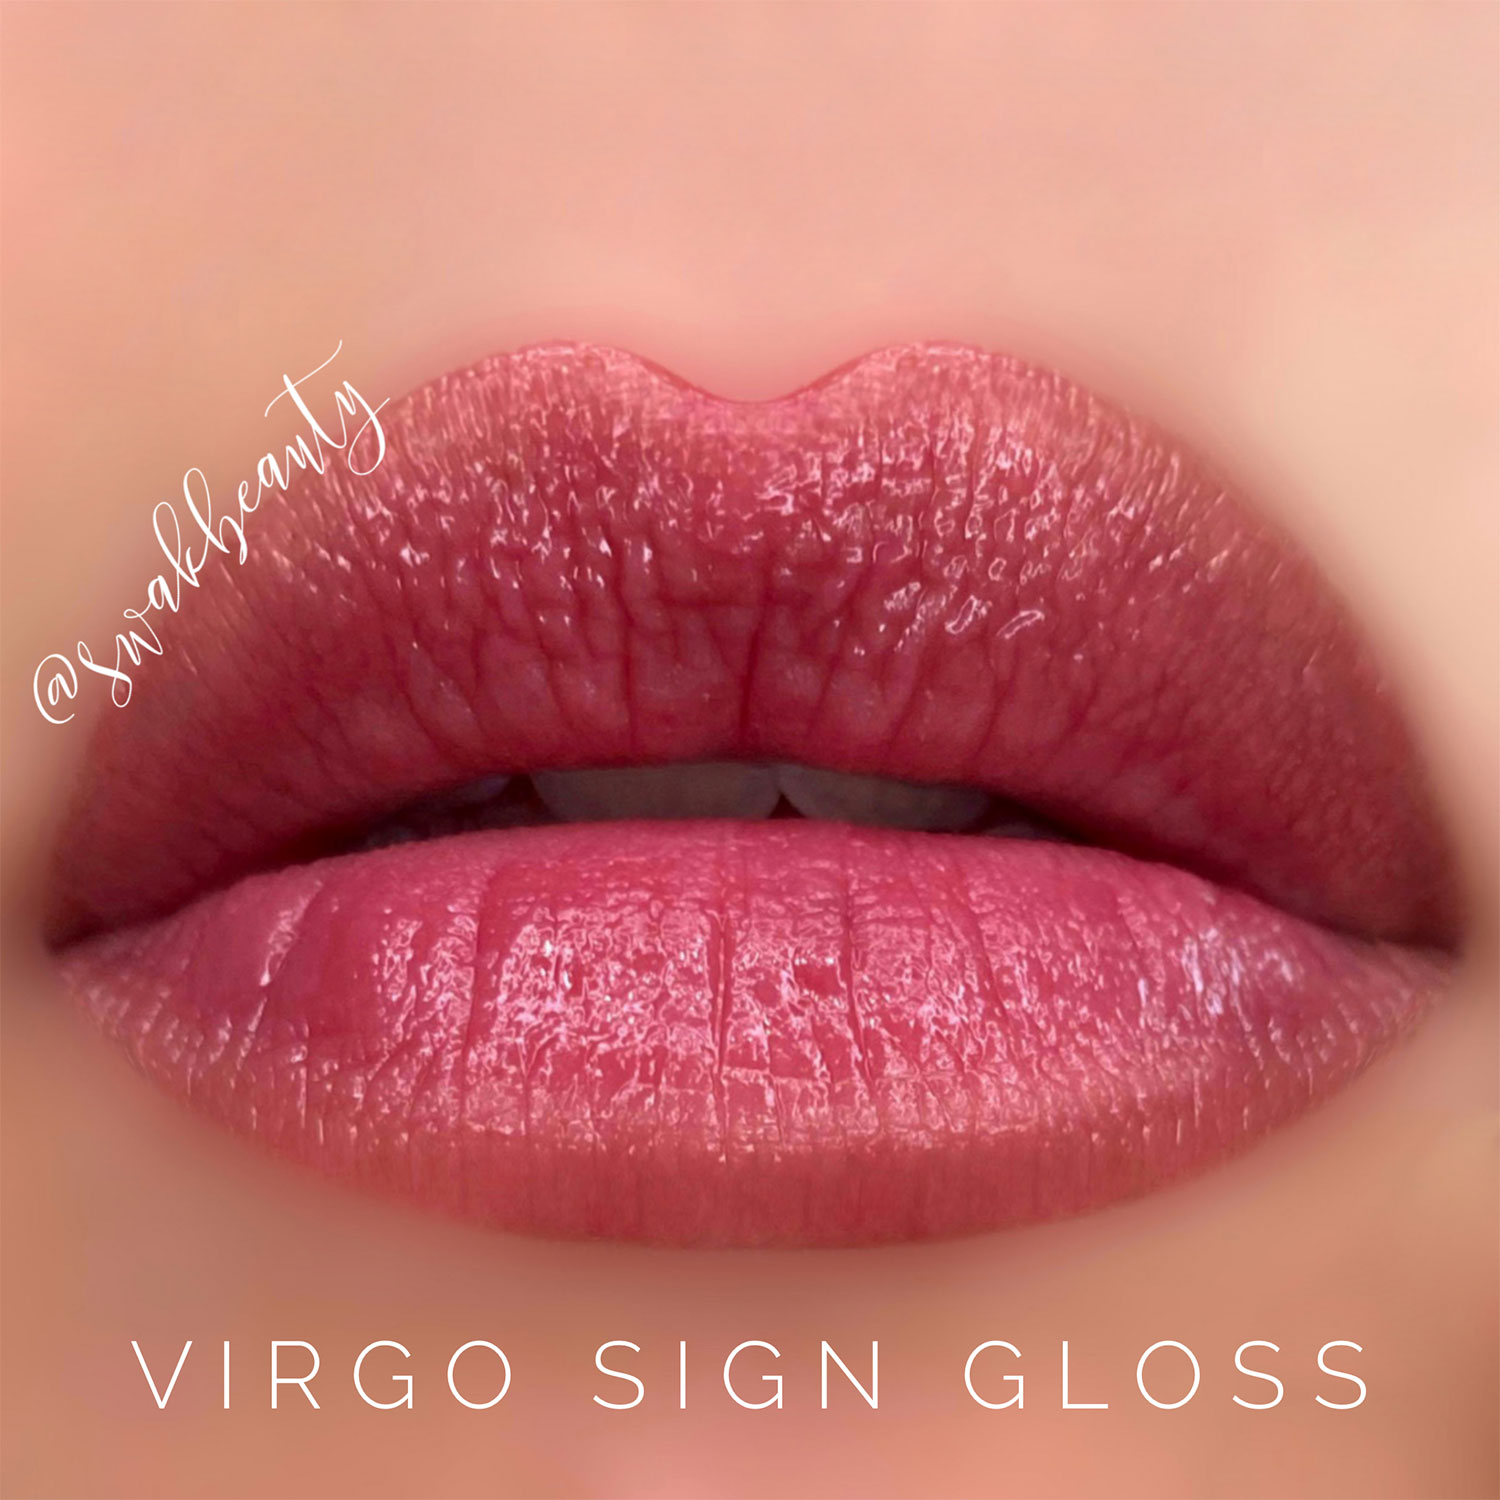 VirgoSignGloss-lips